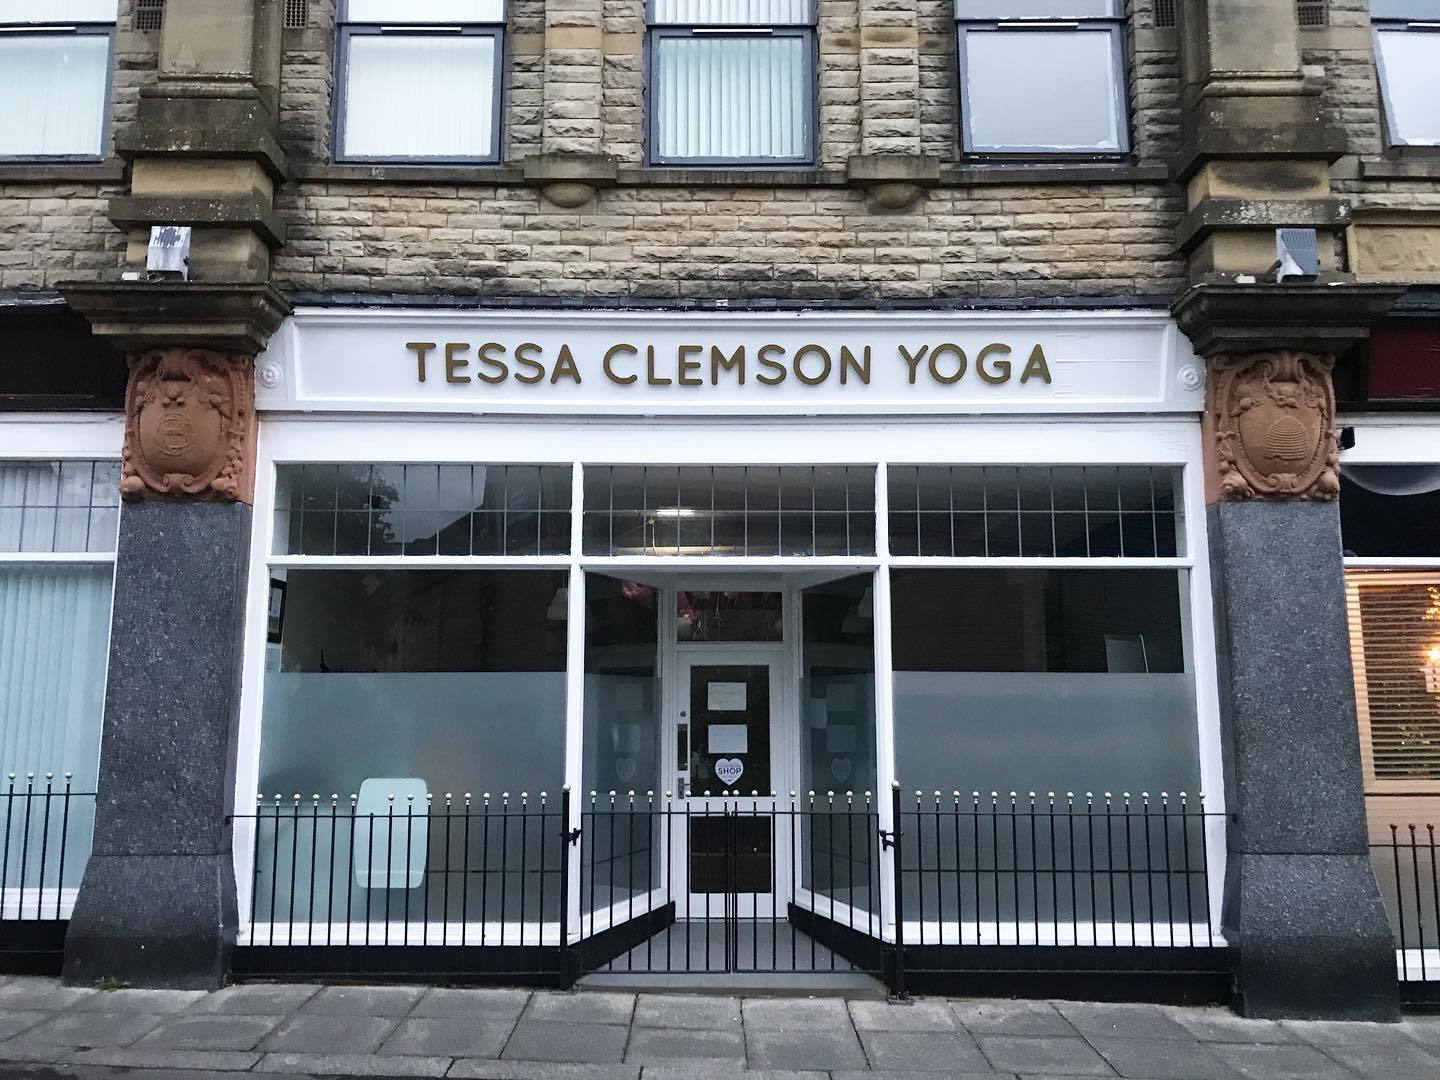 Tessa Clemson Yoga